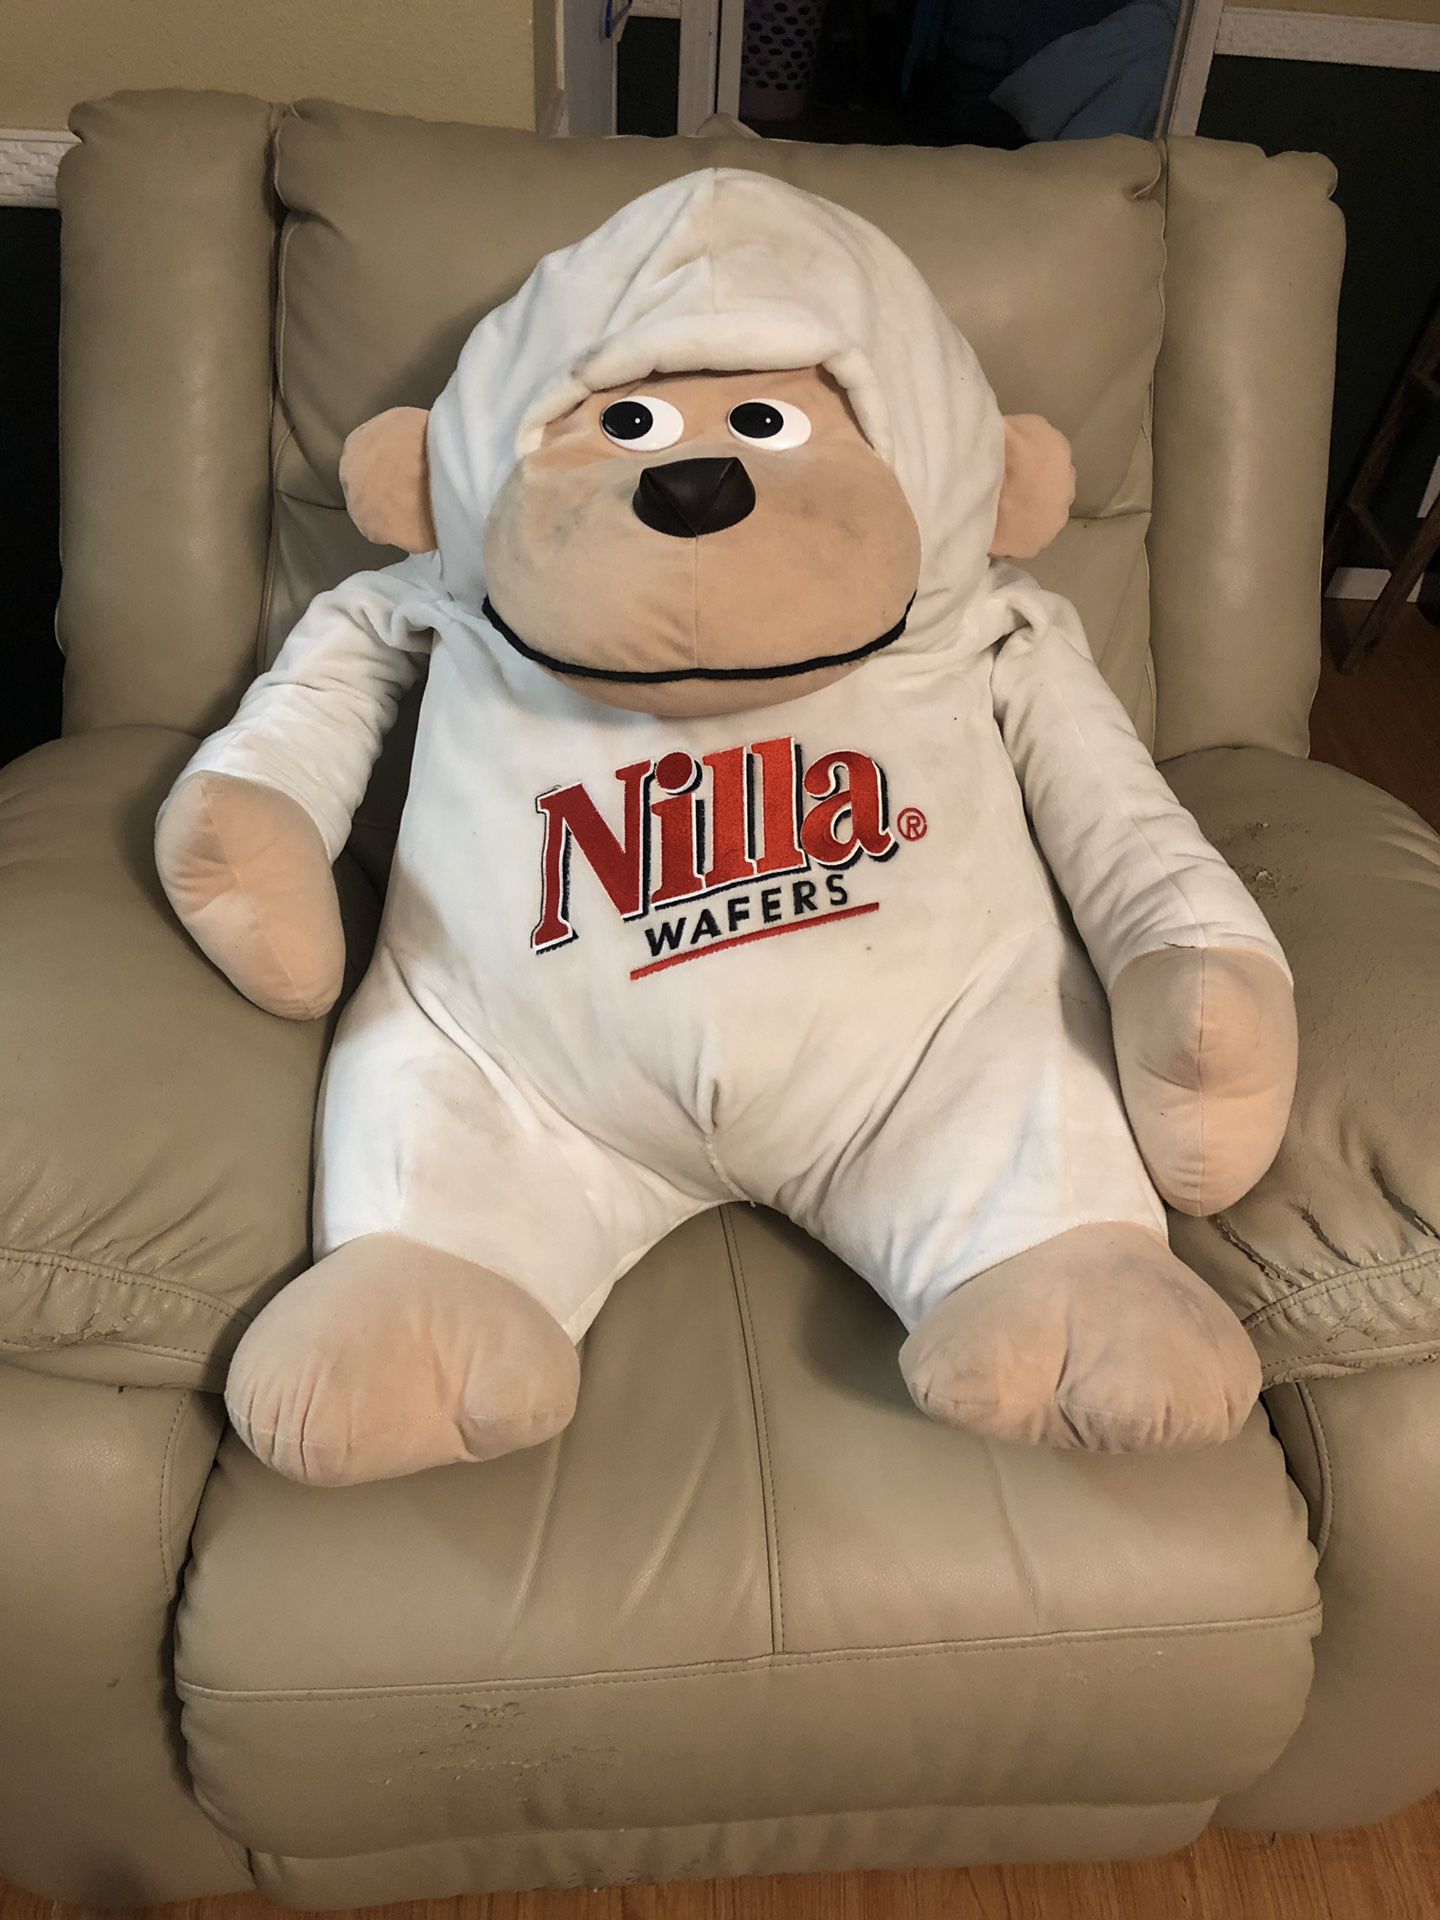 Nilla wafers stuffed monkey (advertising)